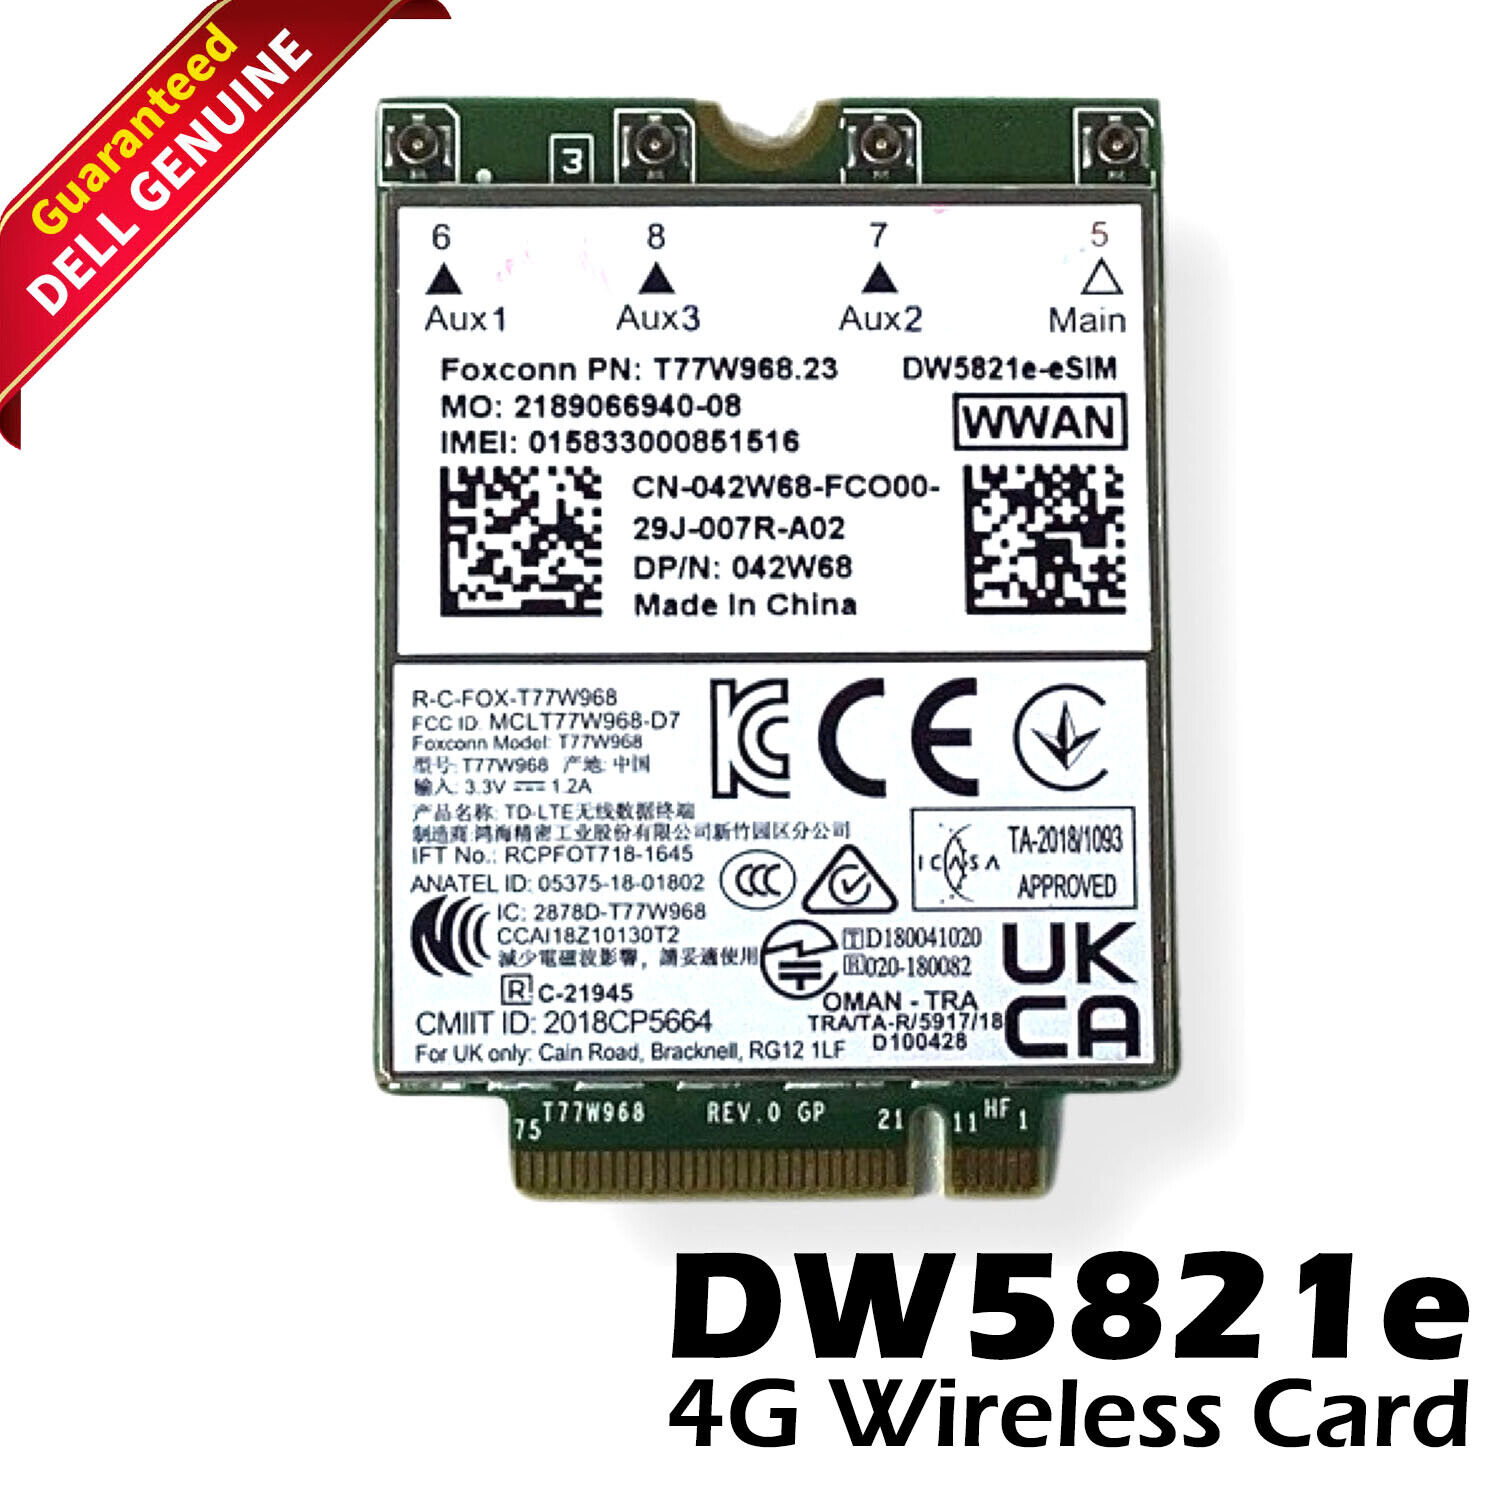 New Dell OEM Wireless 5821E DW5821e M.2 Mobile Broadband 4G LTE WWAN Card 42W68